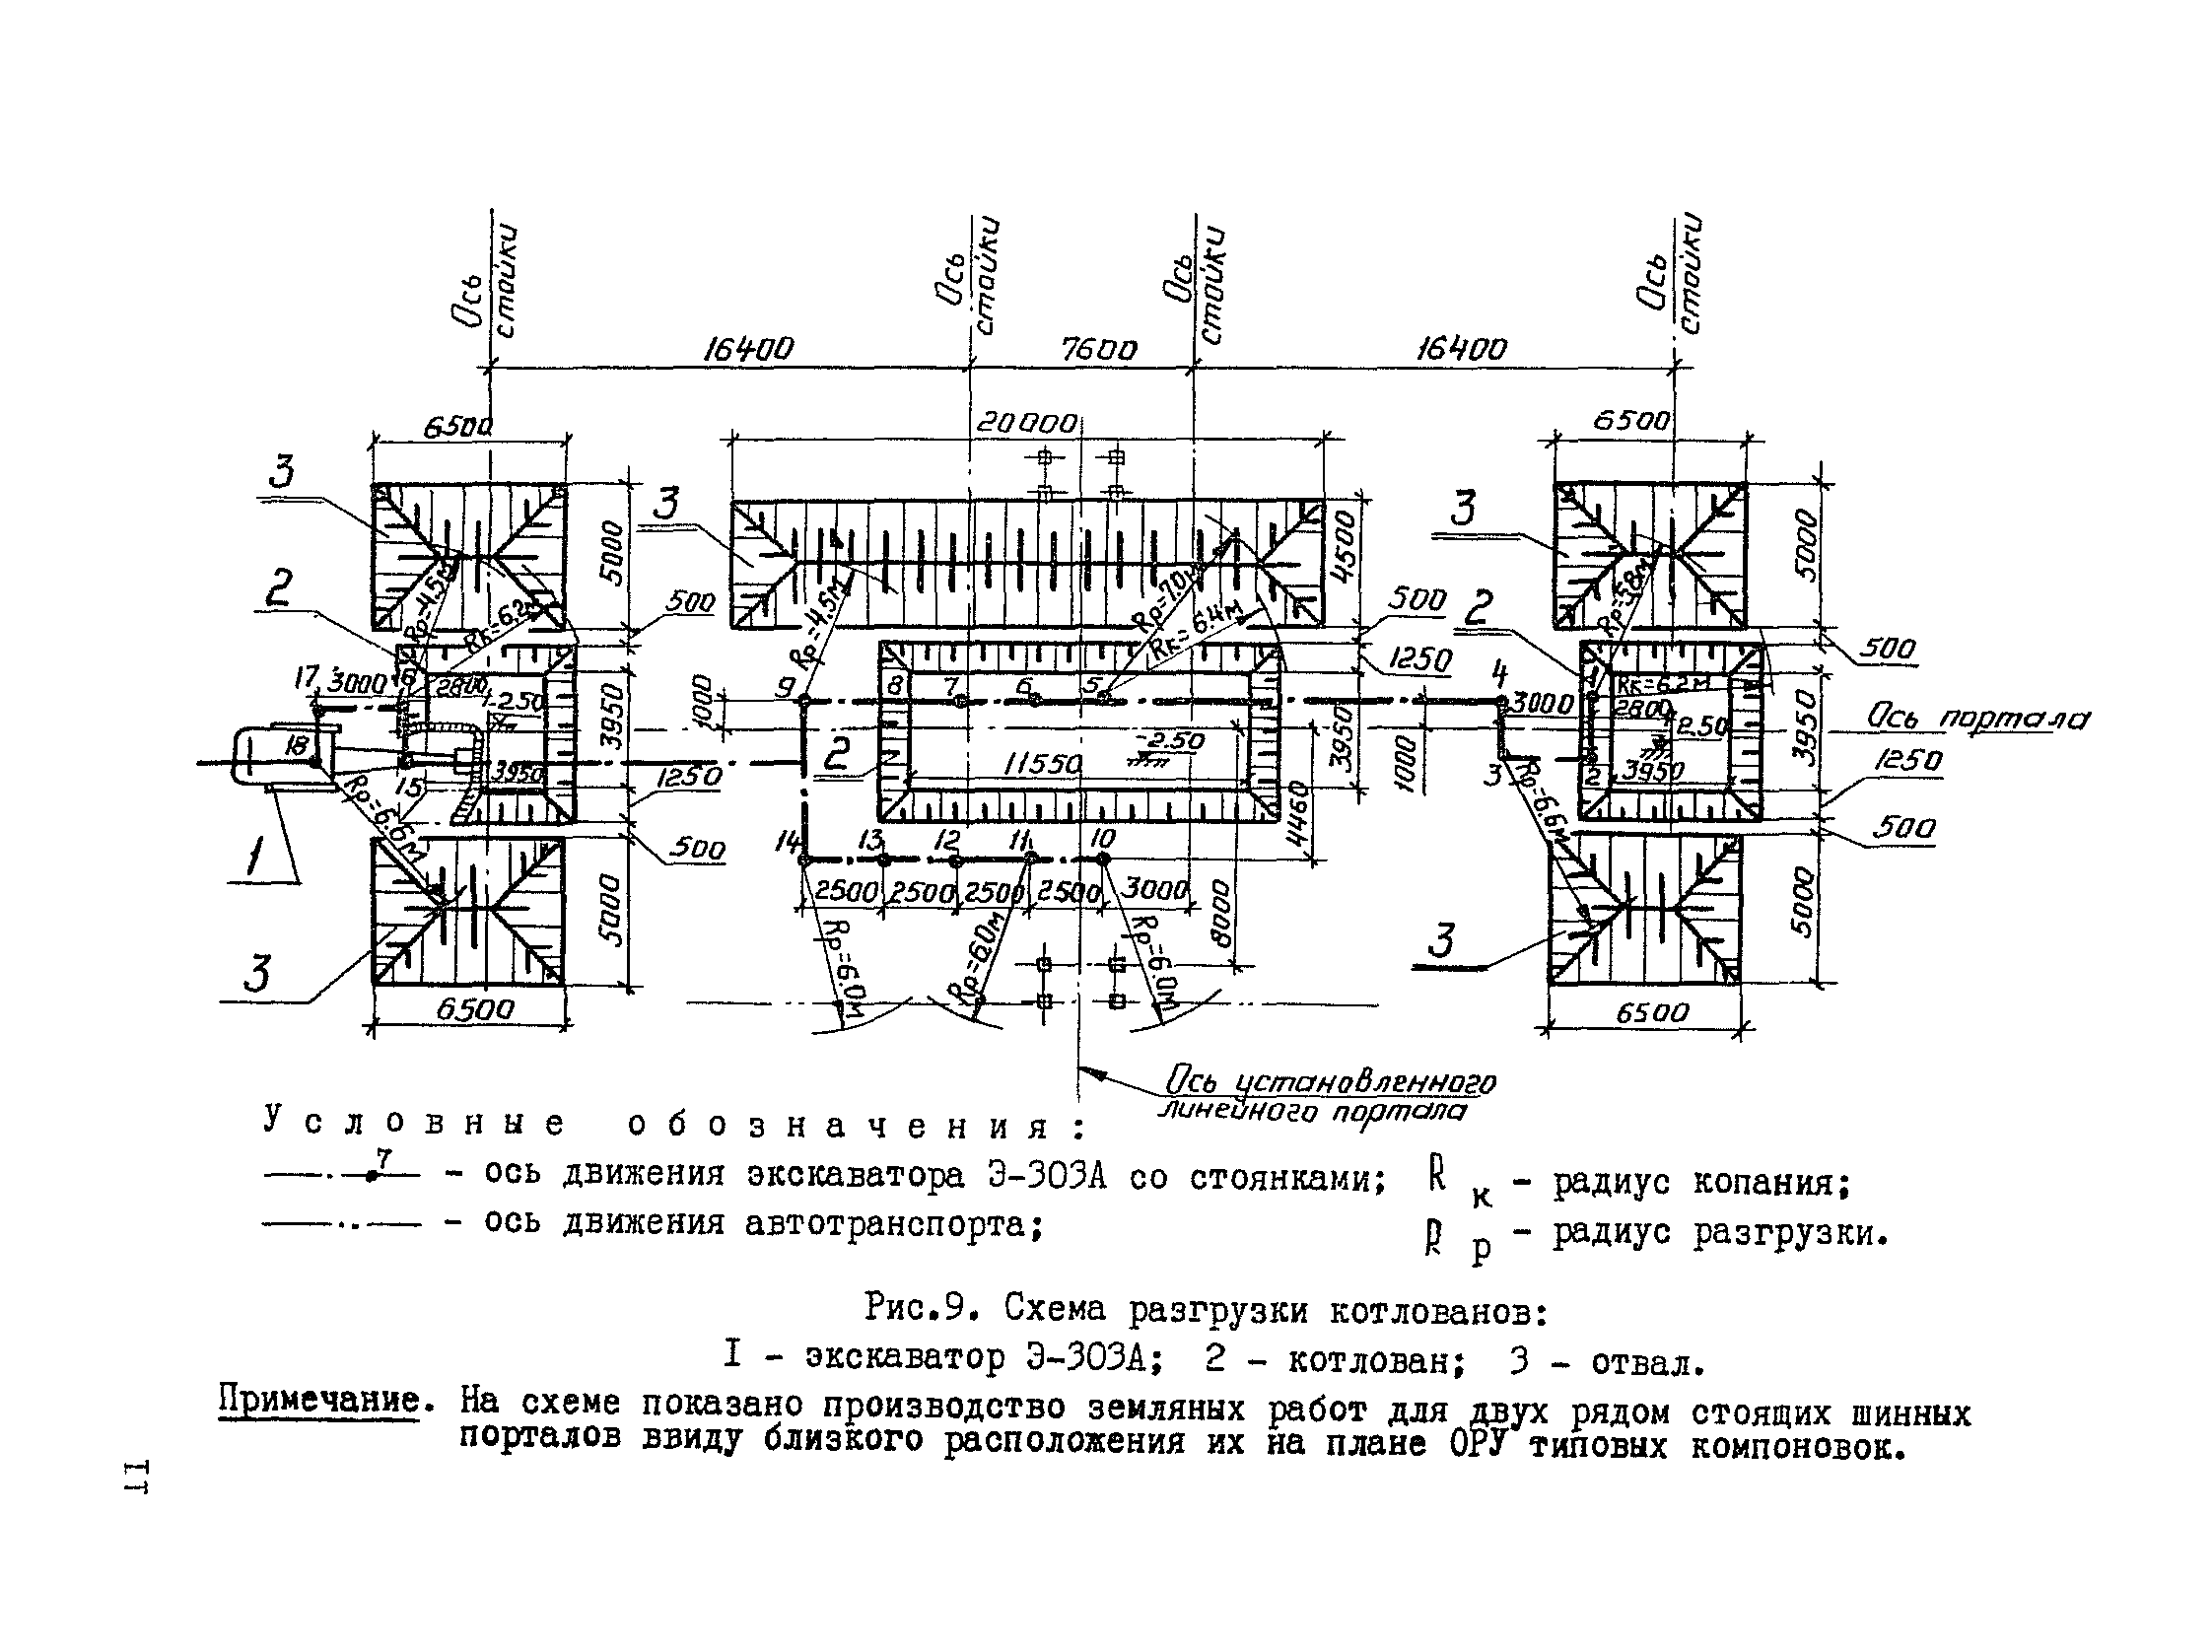 ТК III-1.3